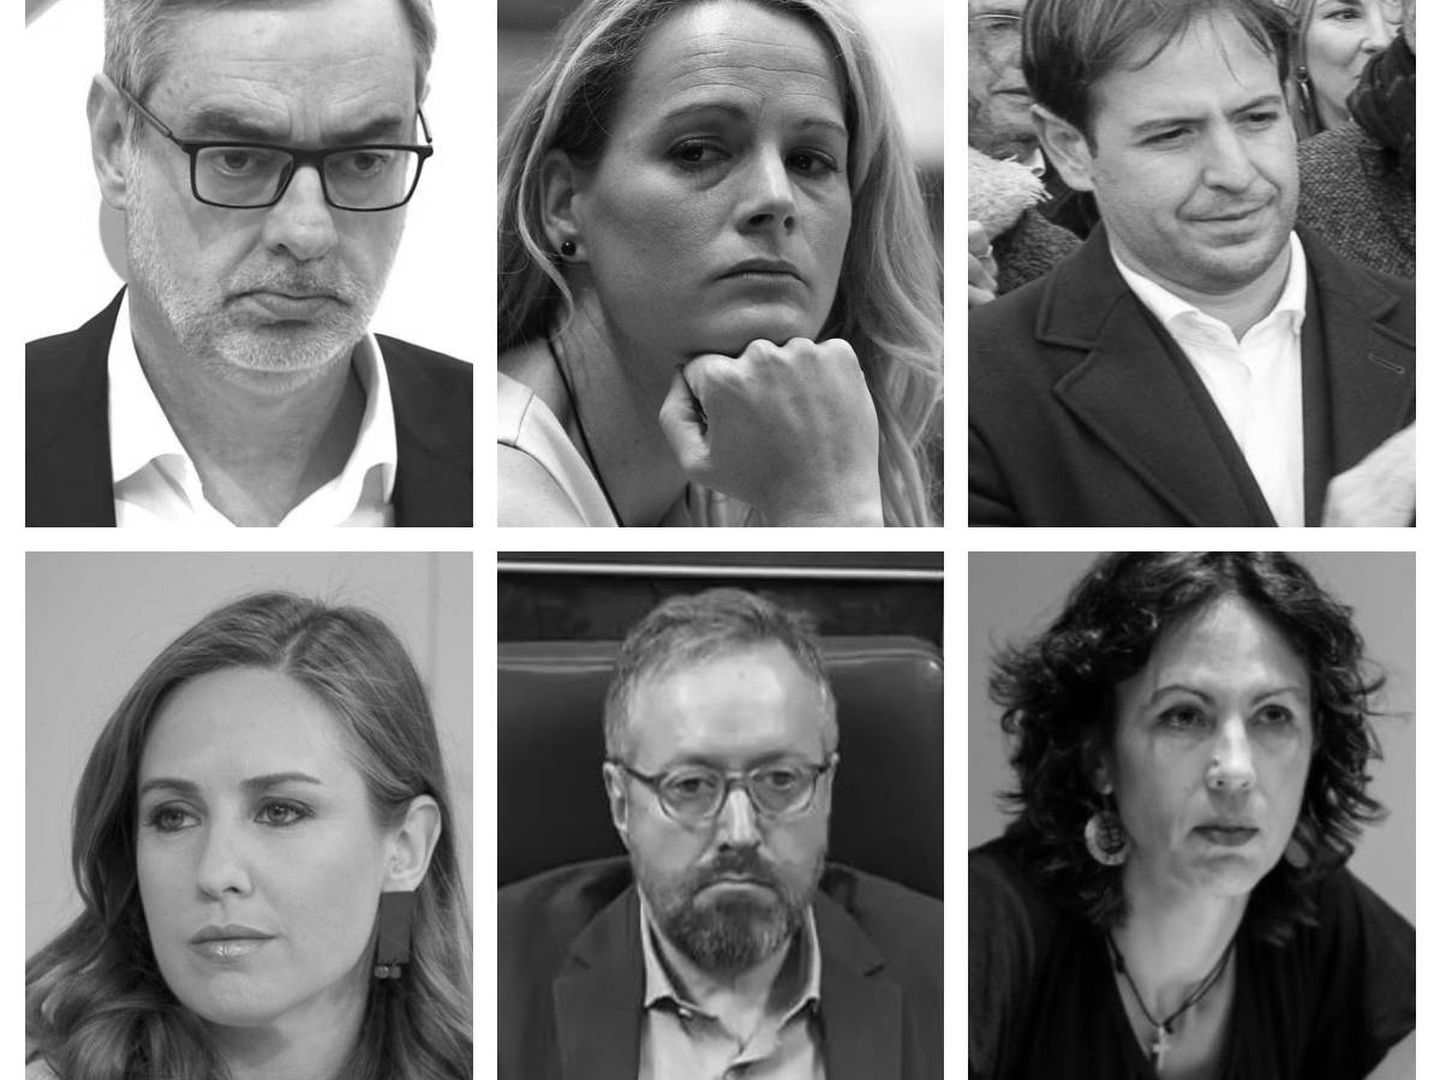 Villegas, Cantera, Brown, Rodríguez, Girauta o García Sempere no pasarán el corte según las encuestas (Montaje: EC)